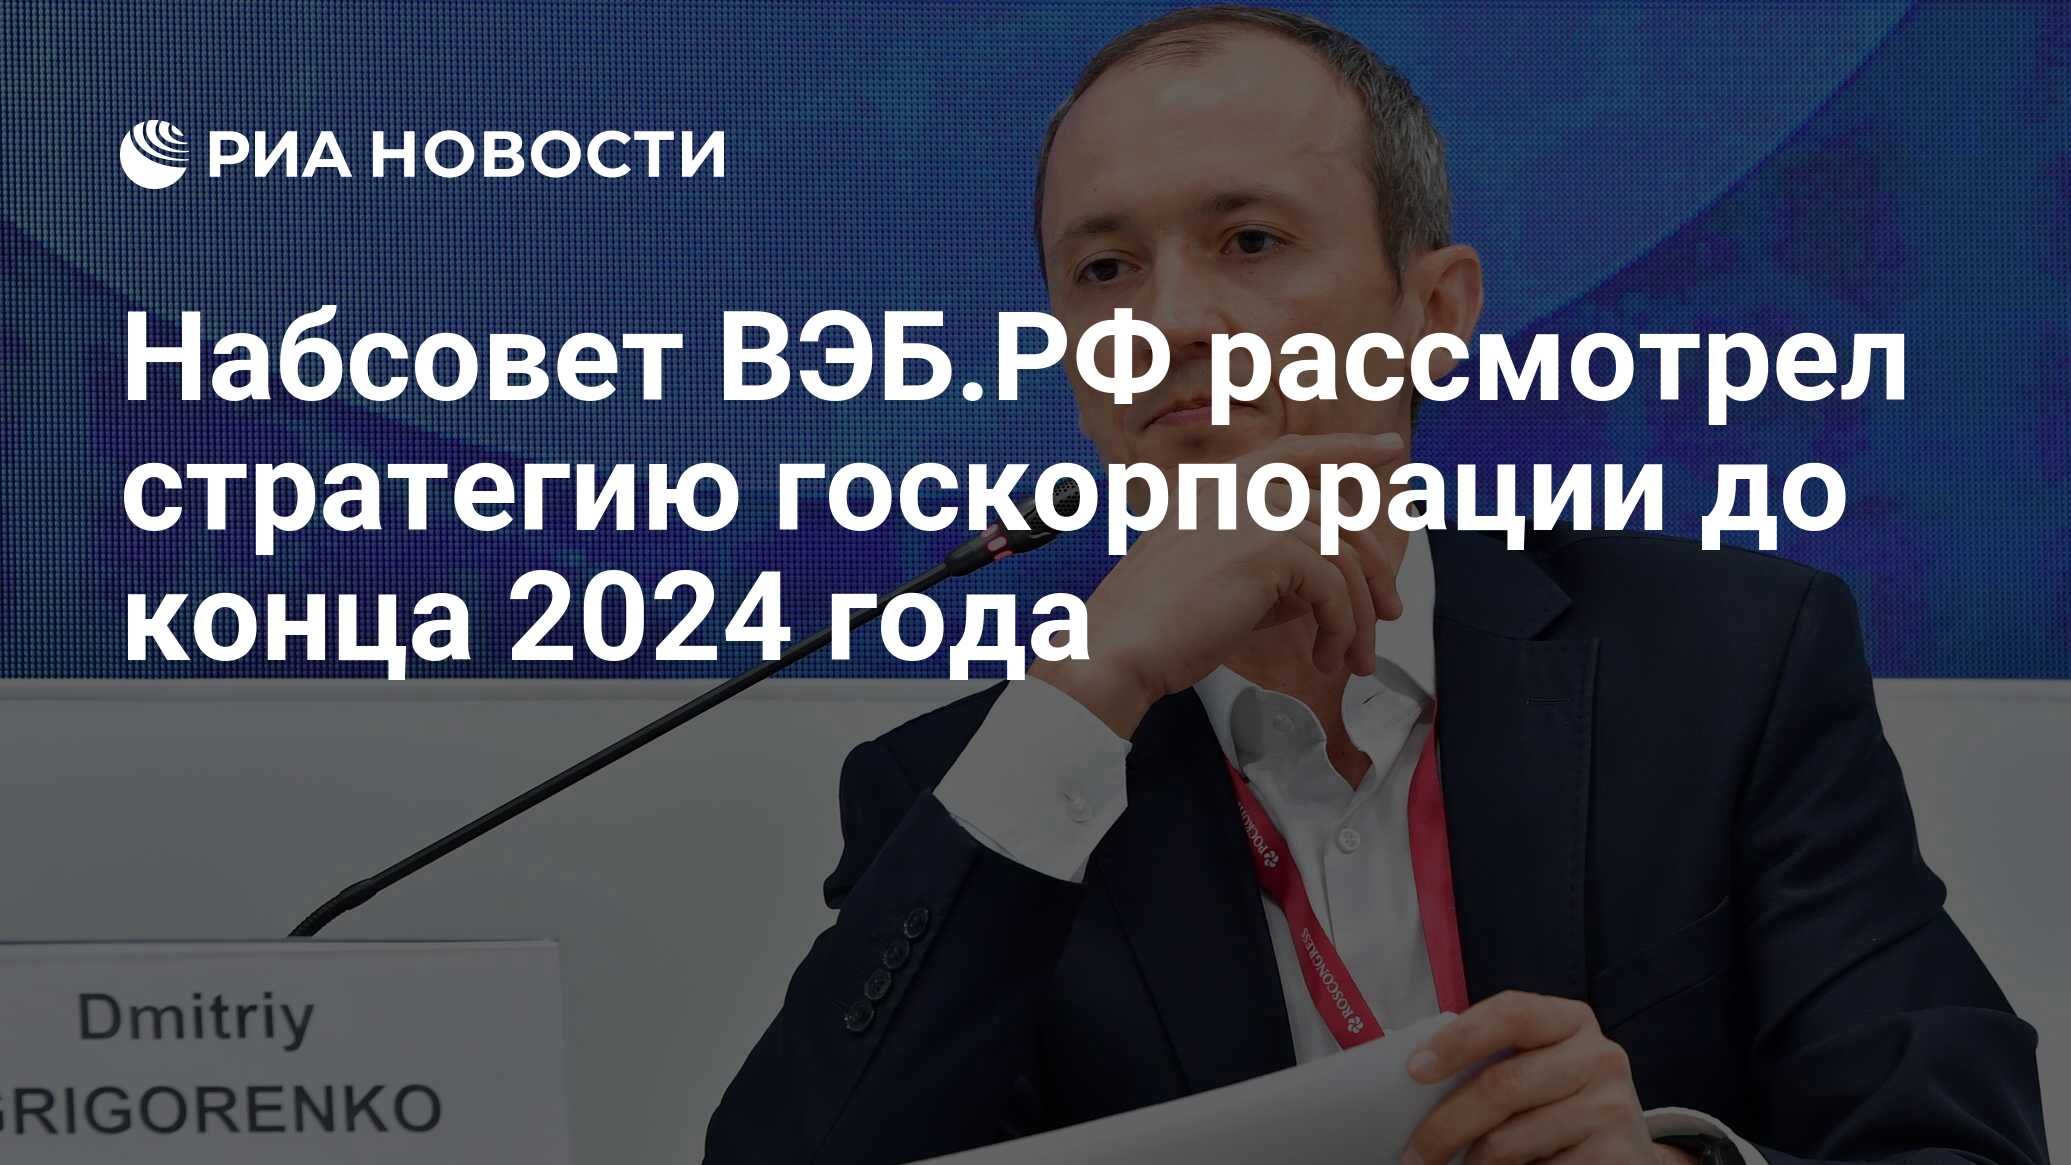 Что будет в конце 2024 года. Григоренко набсовет вэб.